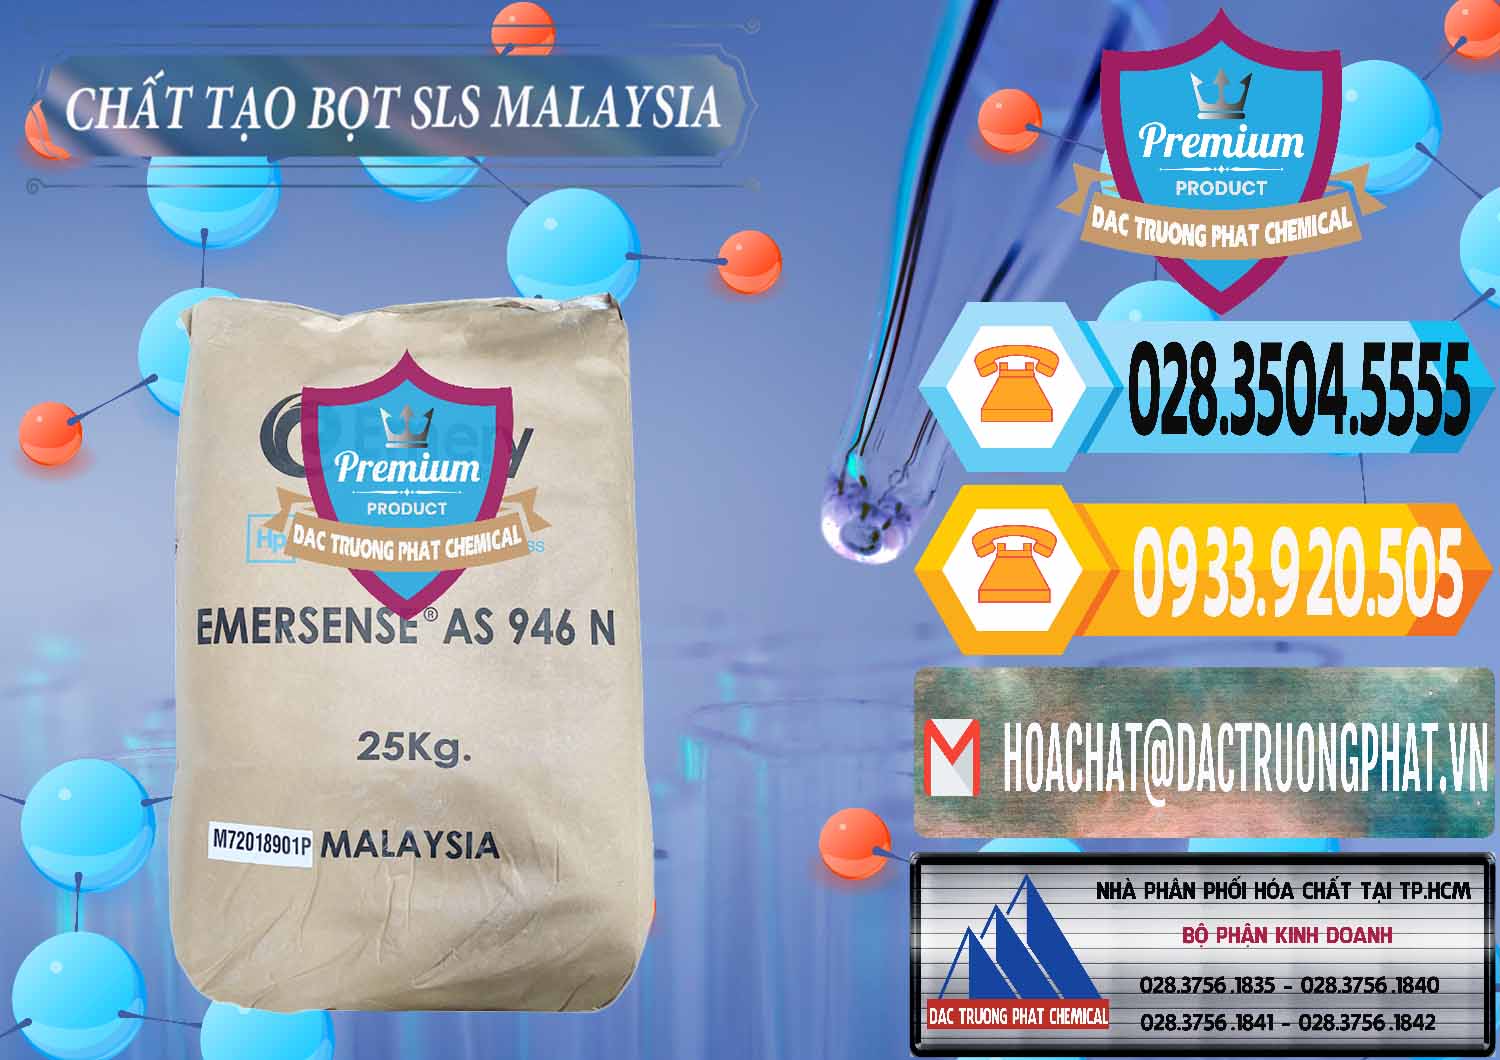 Nơi chuyên bán ( phân phối ) Chất Tạo Bọt SLS Emery - Emersense AS 946N Mã Lai Malaysia - 0423 - Phân phối và cung cấp hóa chất tại TP.HCM - hoachattayrua.net